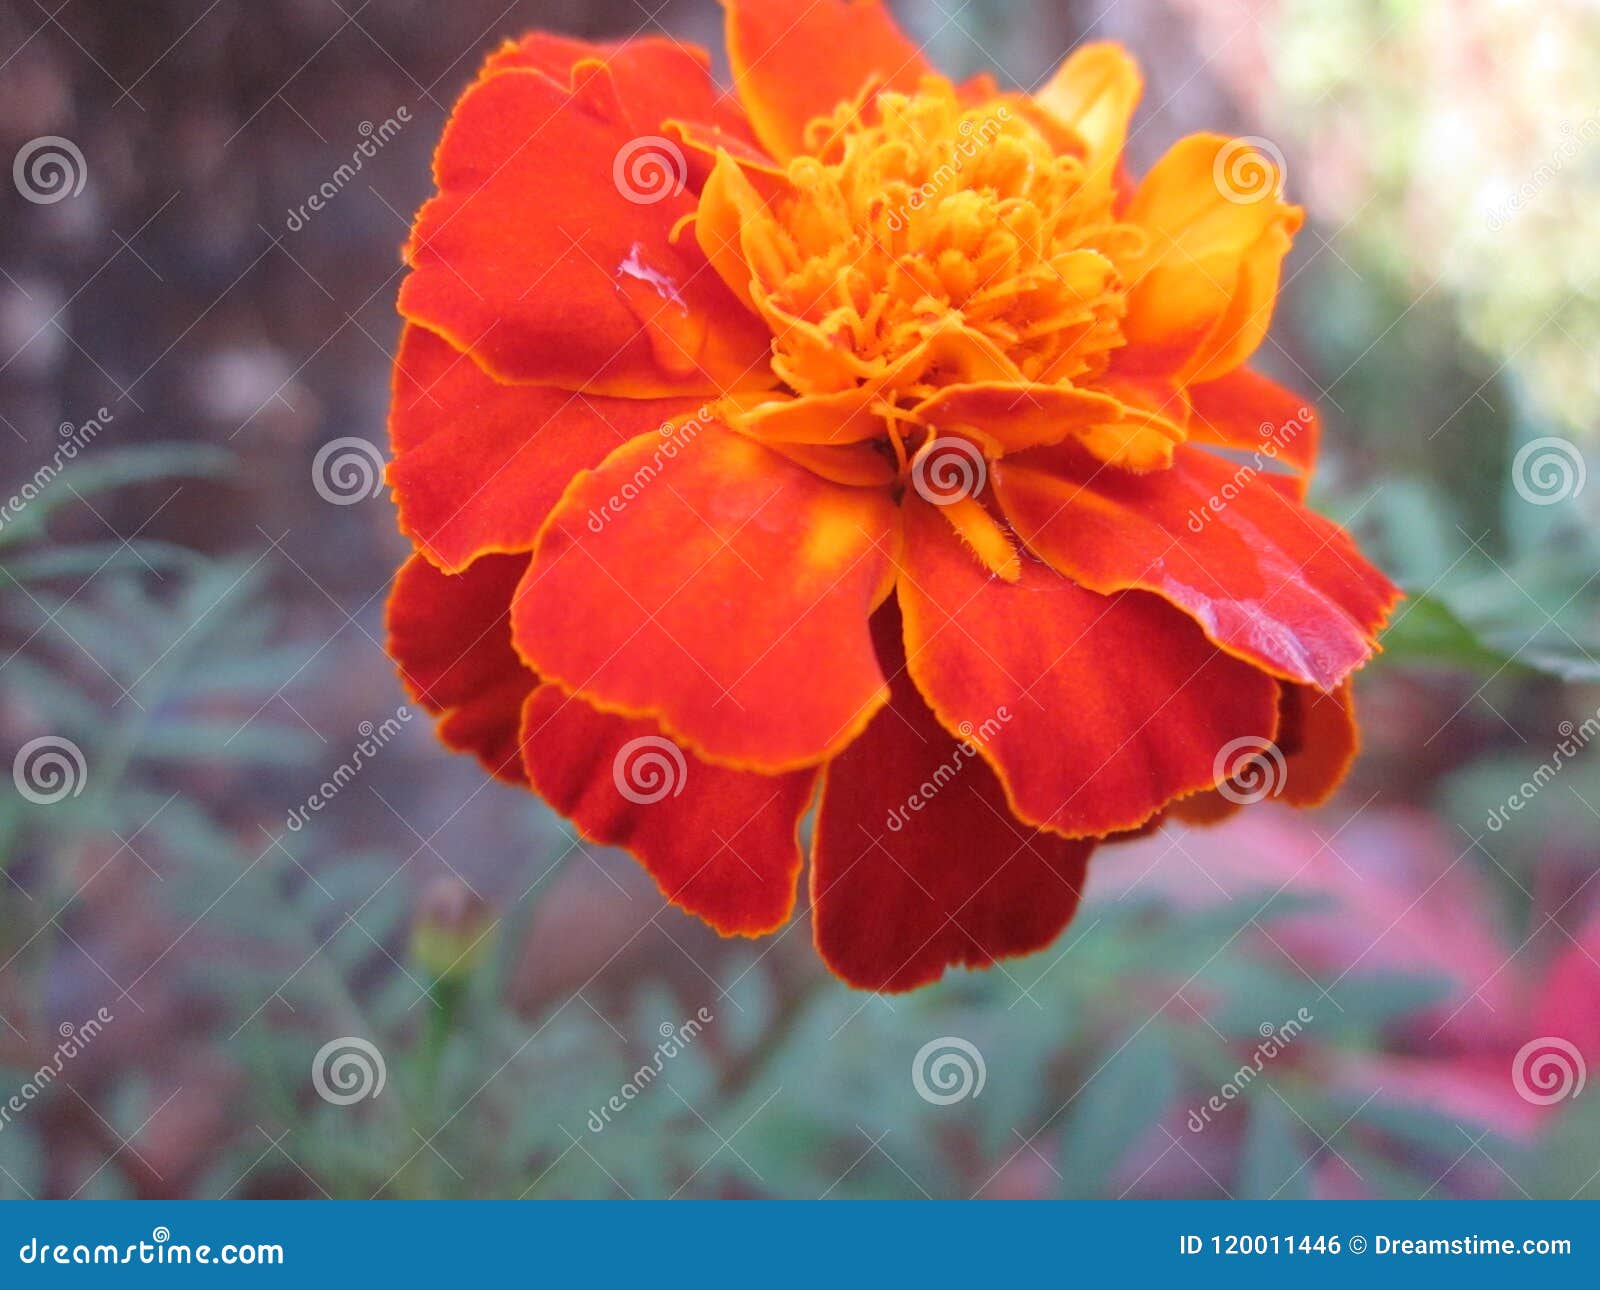 marigold flower tagetes patula stock photo - image of kannada